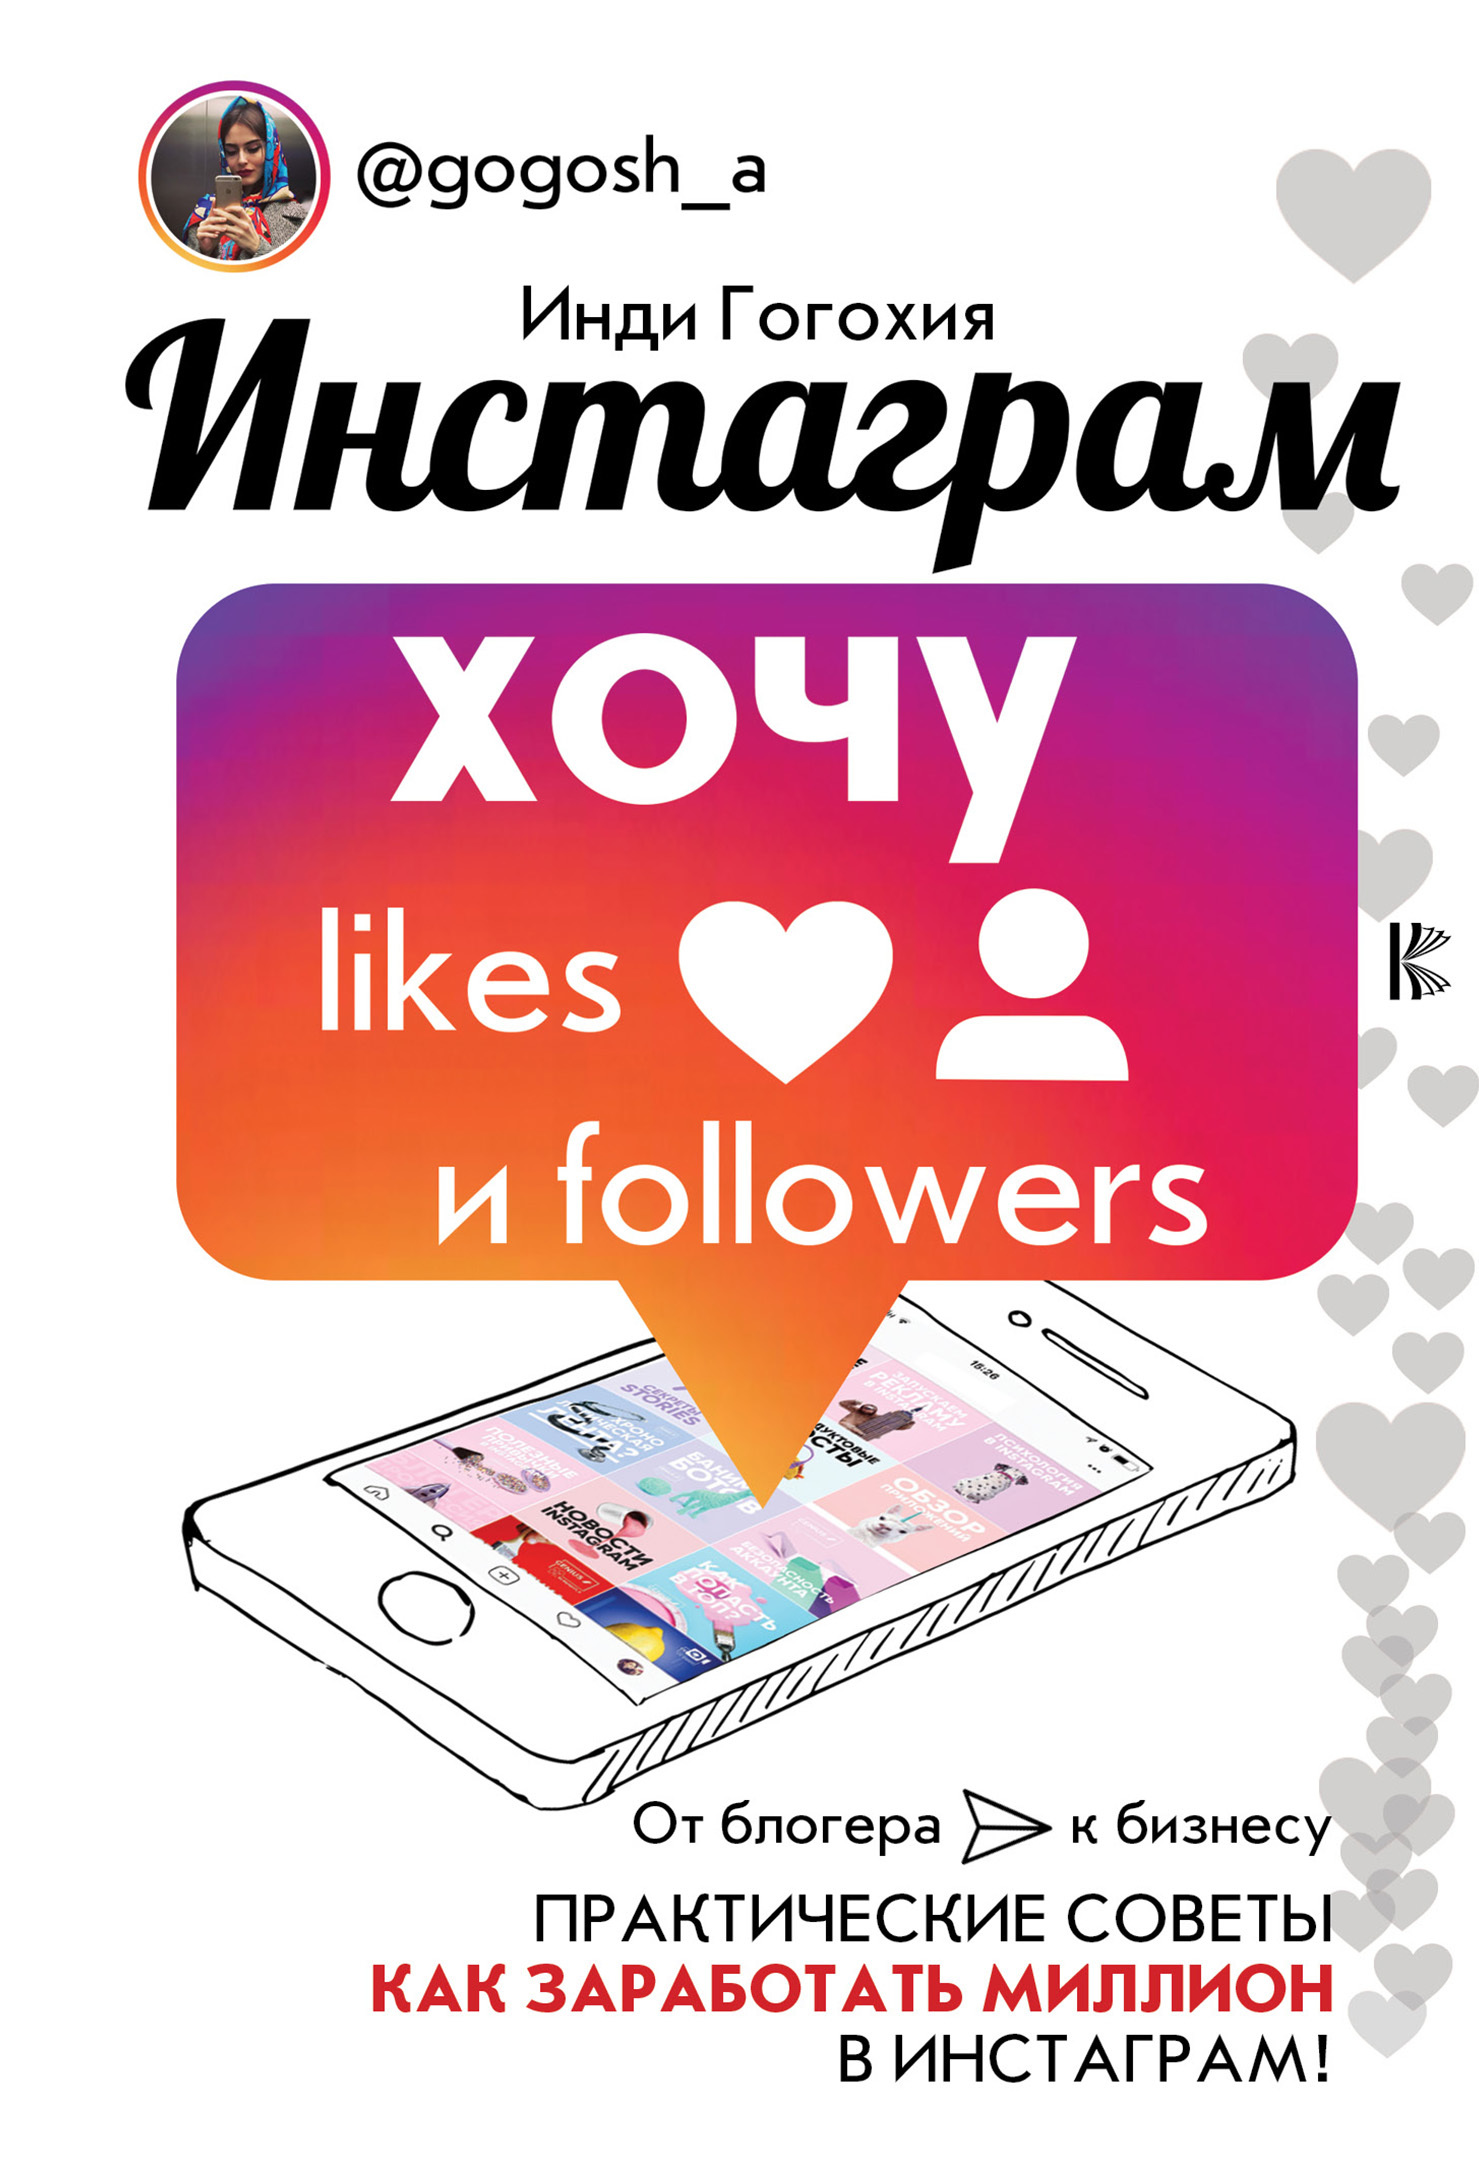 Инстаграм: хочу likes и followers (fb2)